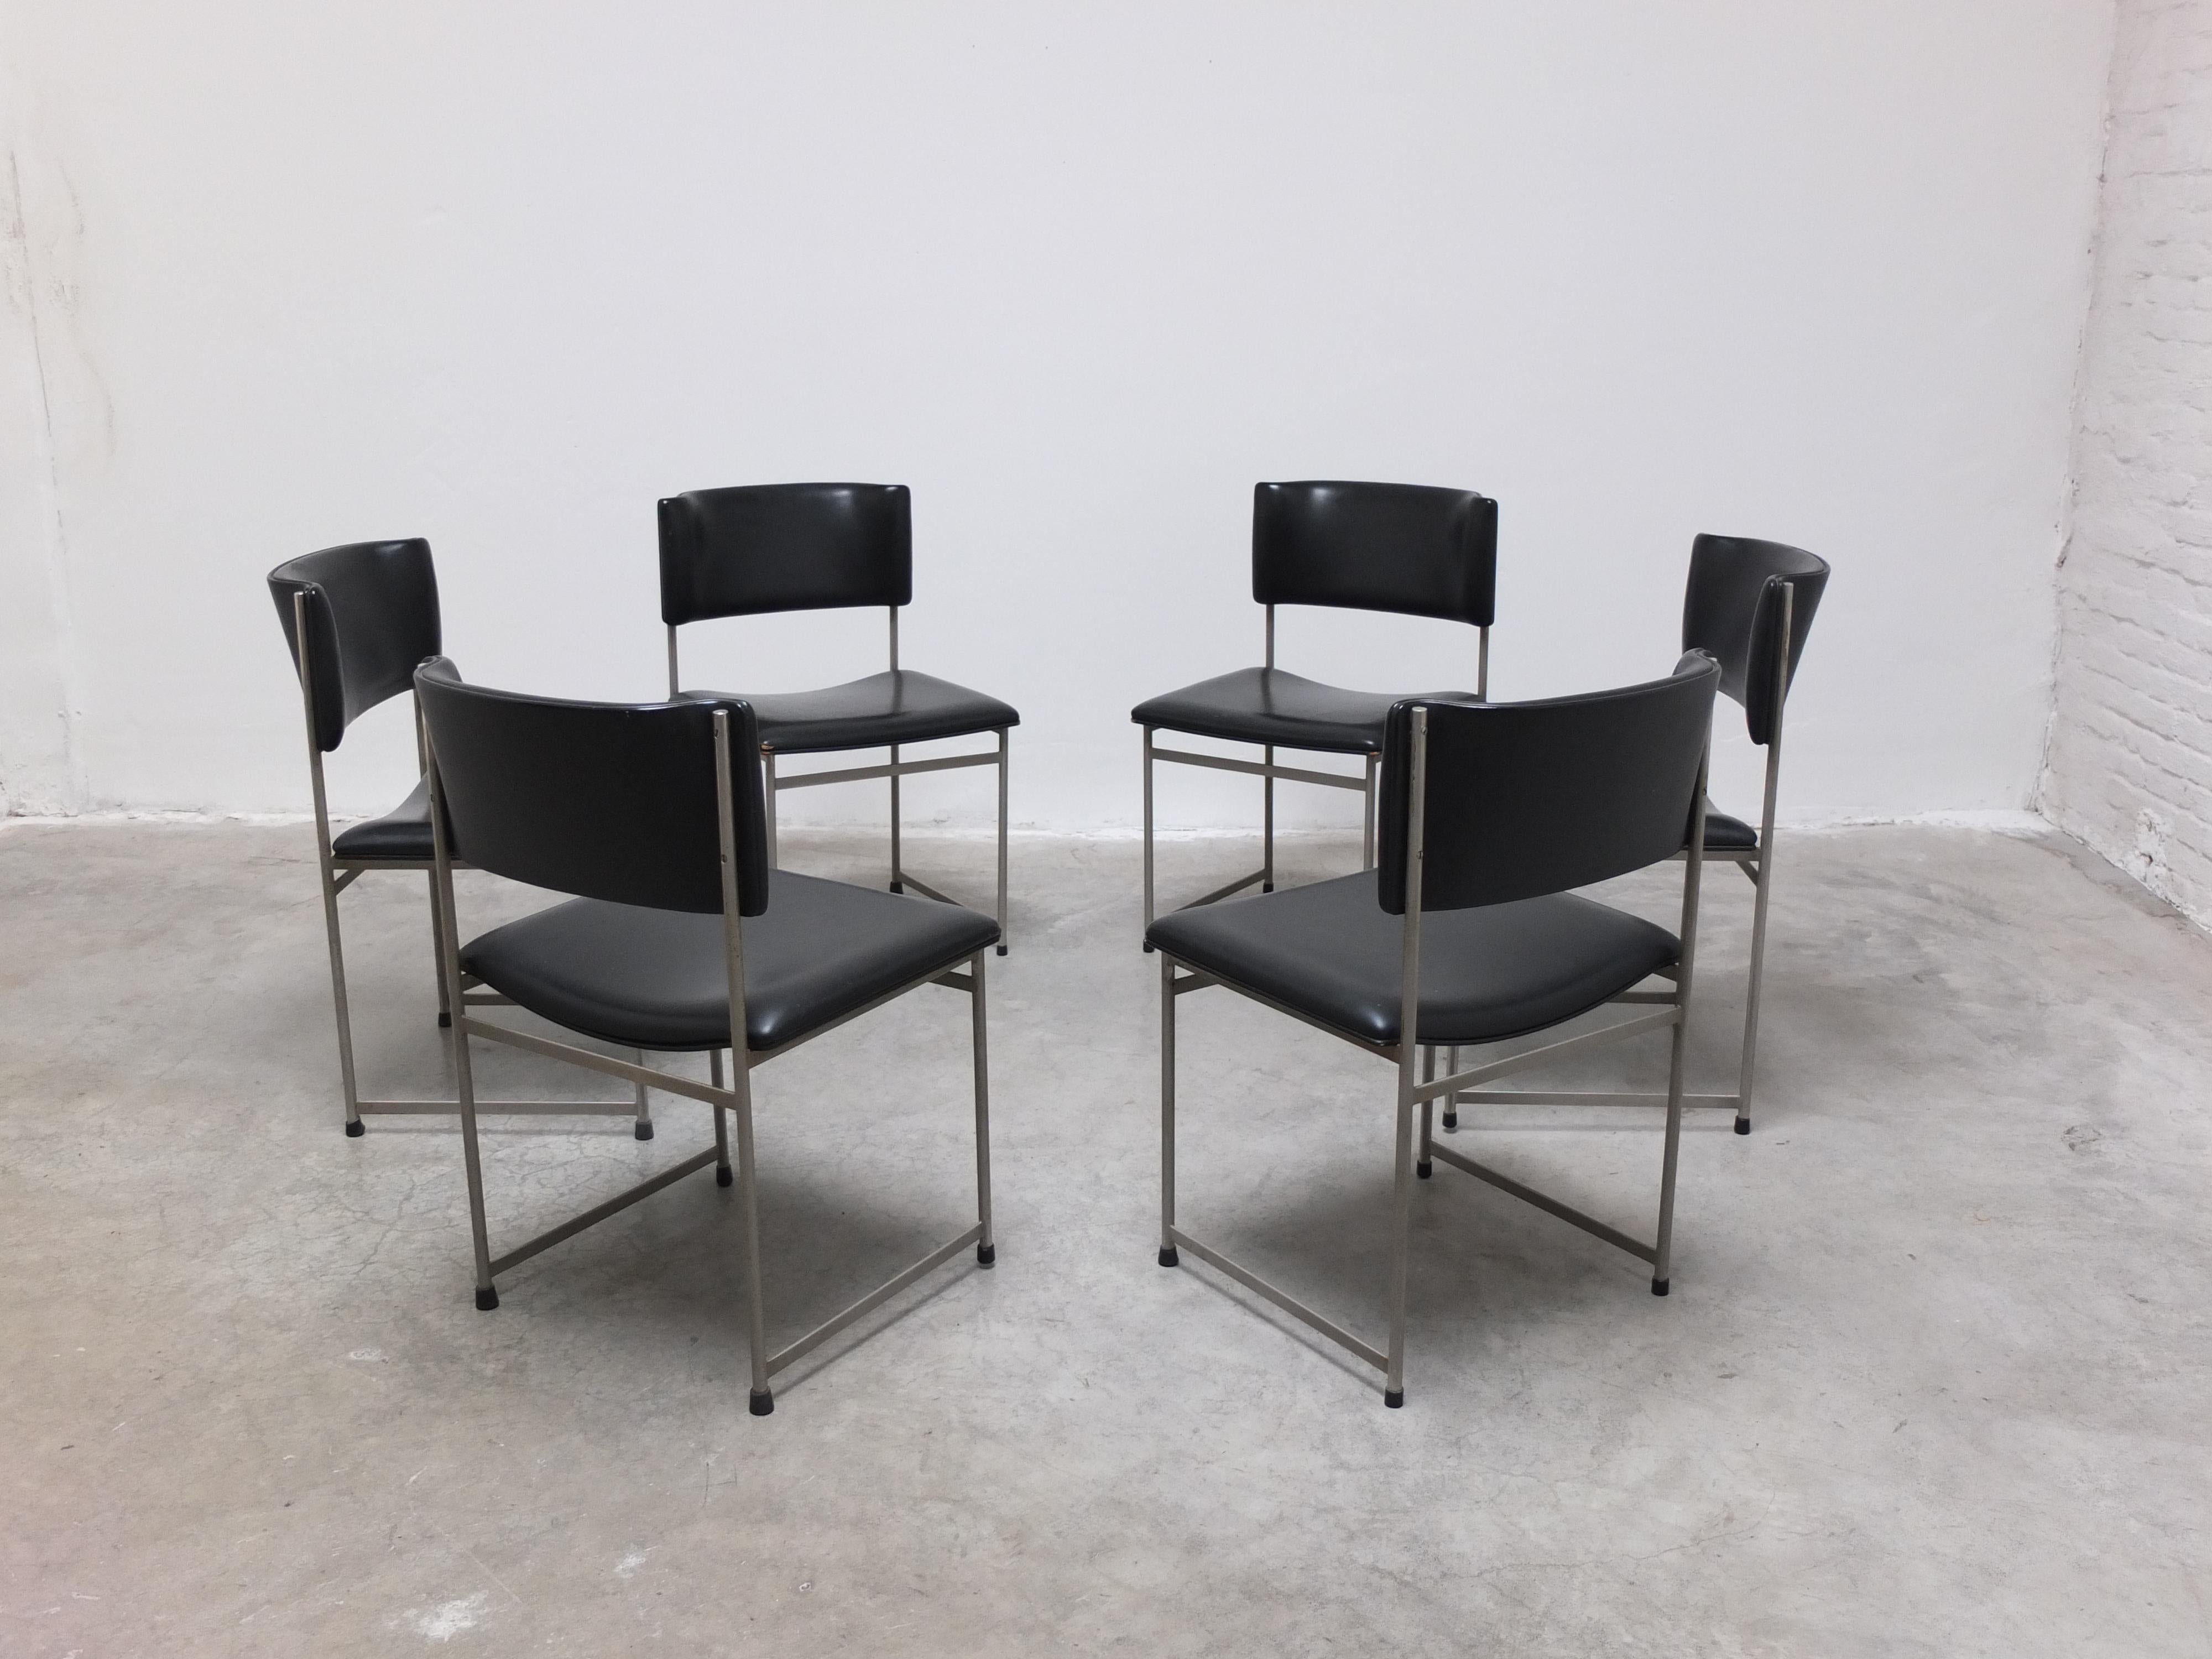 Toller Satz von 6 'SM08' Esszimmerstühlen, entworfen von Cees Braakman für Pastoe in den 1960er Jahren. Ein wunderschönes, minimalistisches Design mit einem eleganten Metallrahmen in Kombination mit der originalen schwarzen Kunstlederpolsterung.